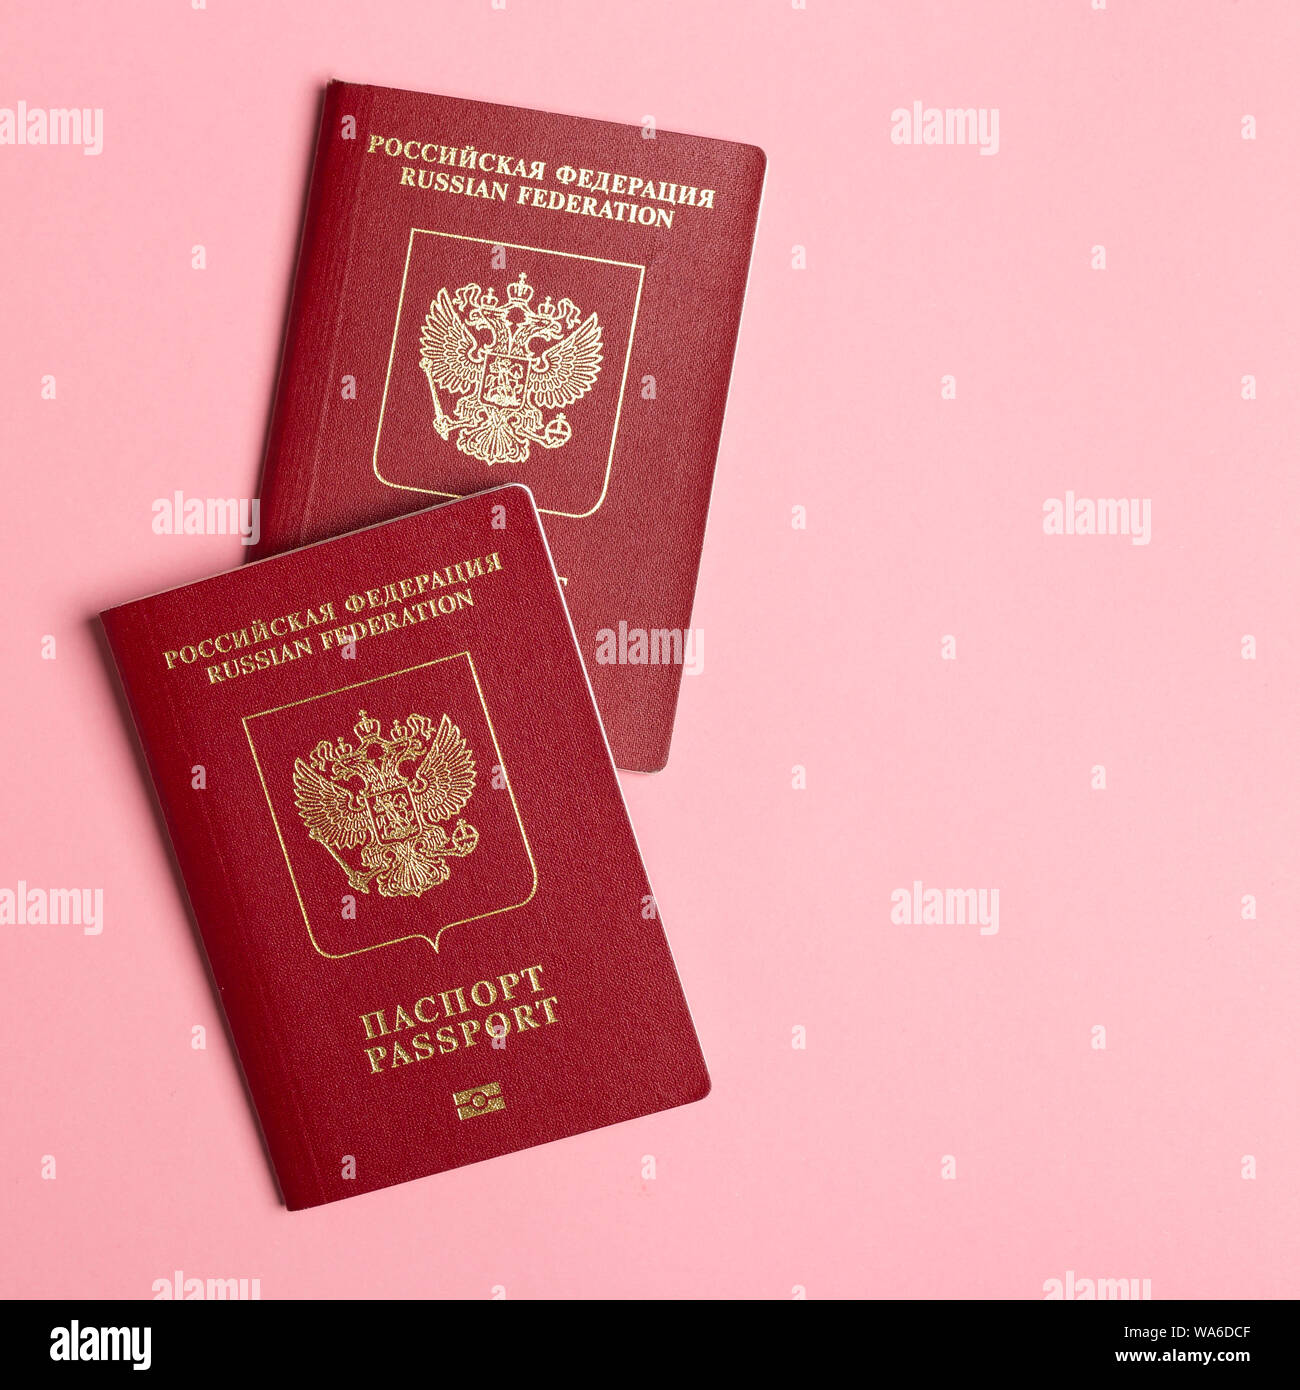 Zwei russische Pässe auf rosa Hintergrund. Reisen oder Migration Konzept. Ansicht von oben mit Kopie spce Stockfoto